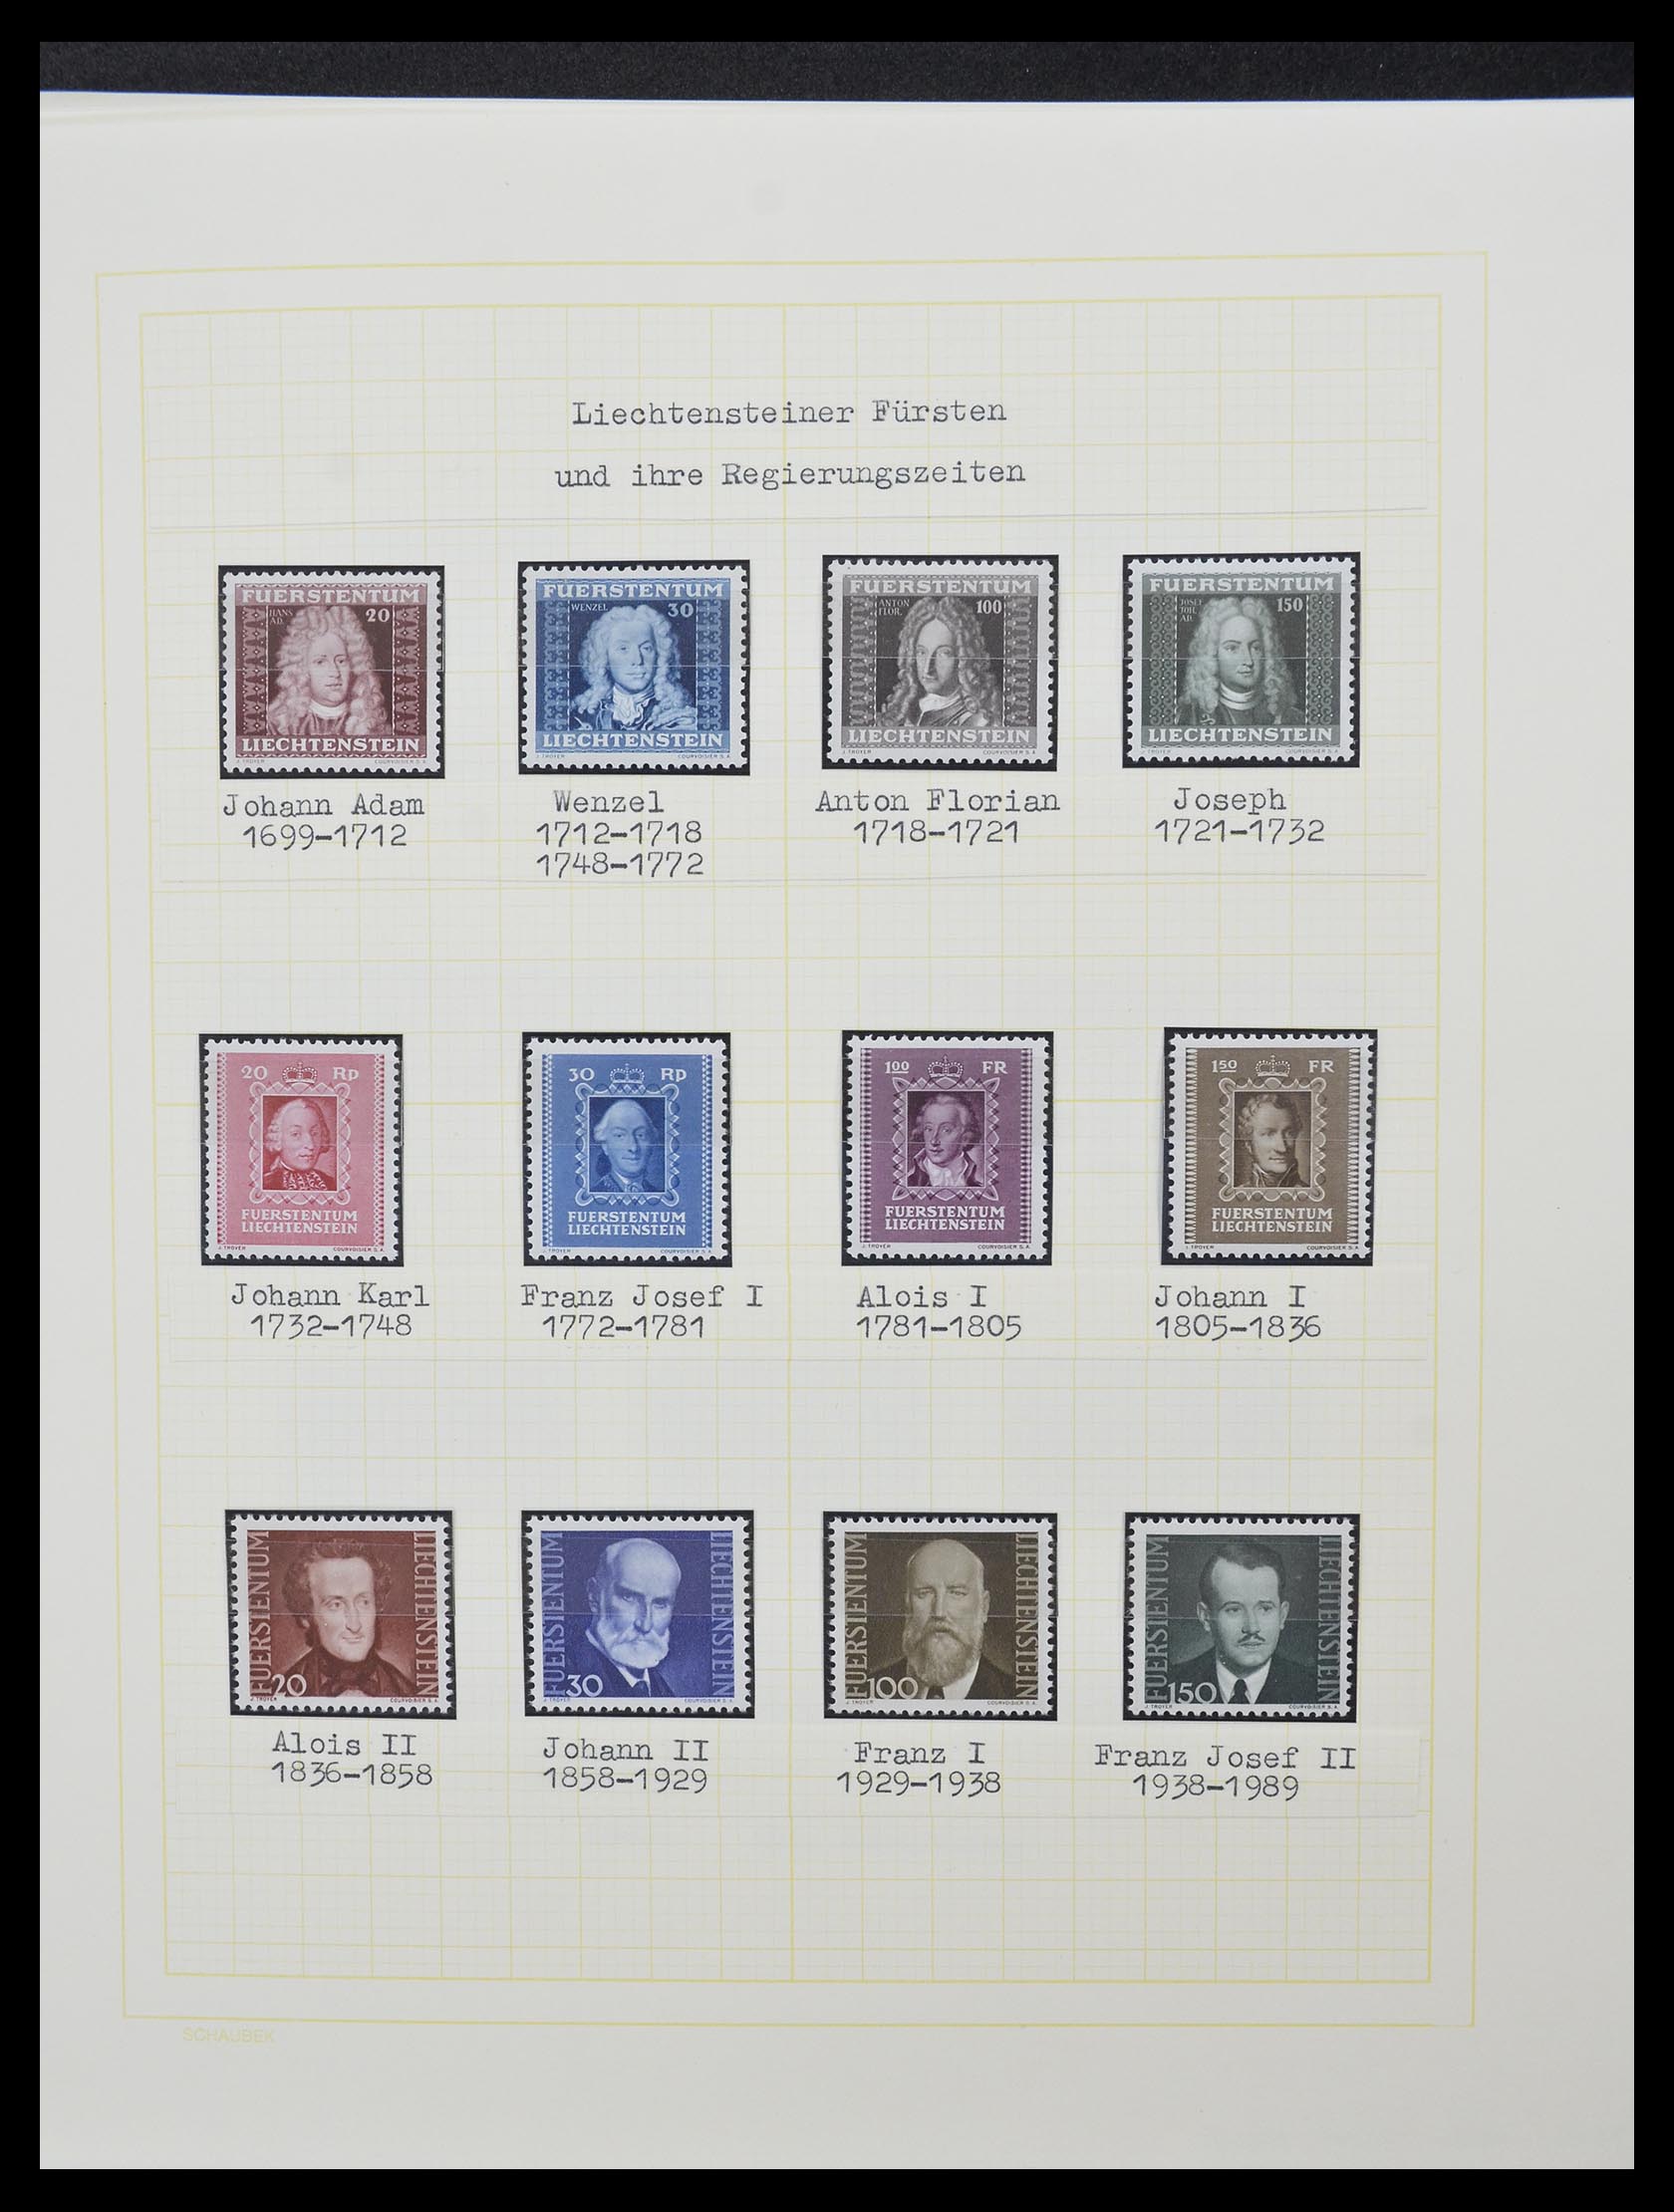 33138 012 - Stamp collection 33138 Liechtenstein 1912-2002.